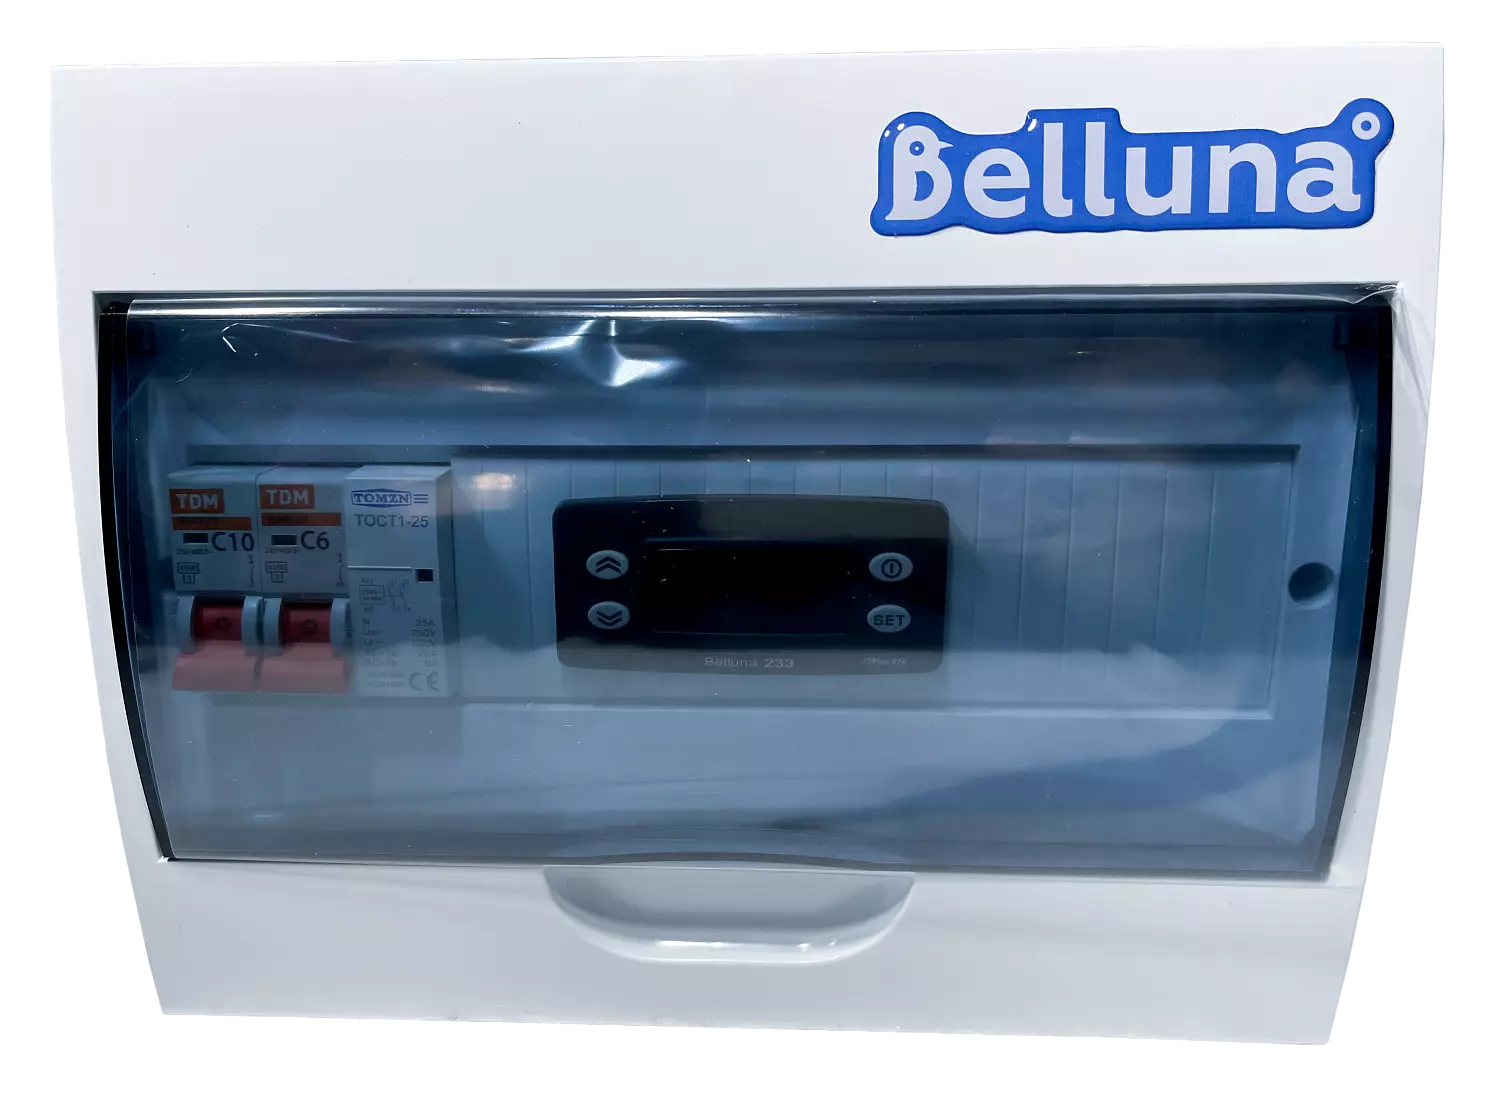 сплит-система Belluna U205 Челябинск